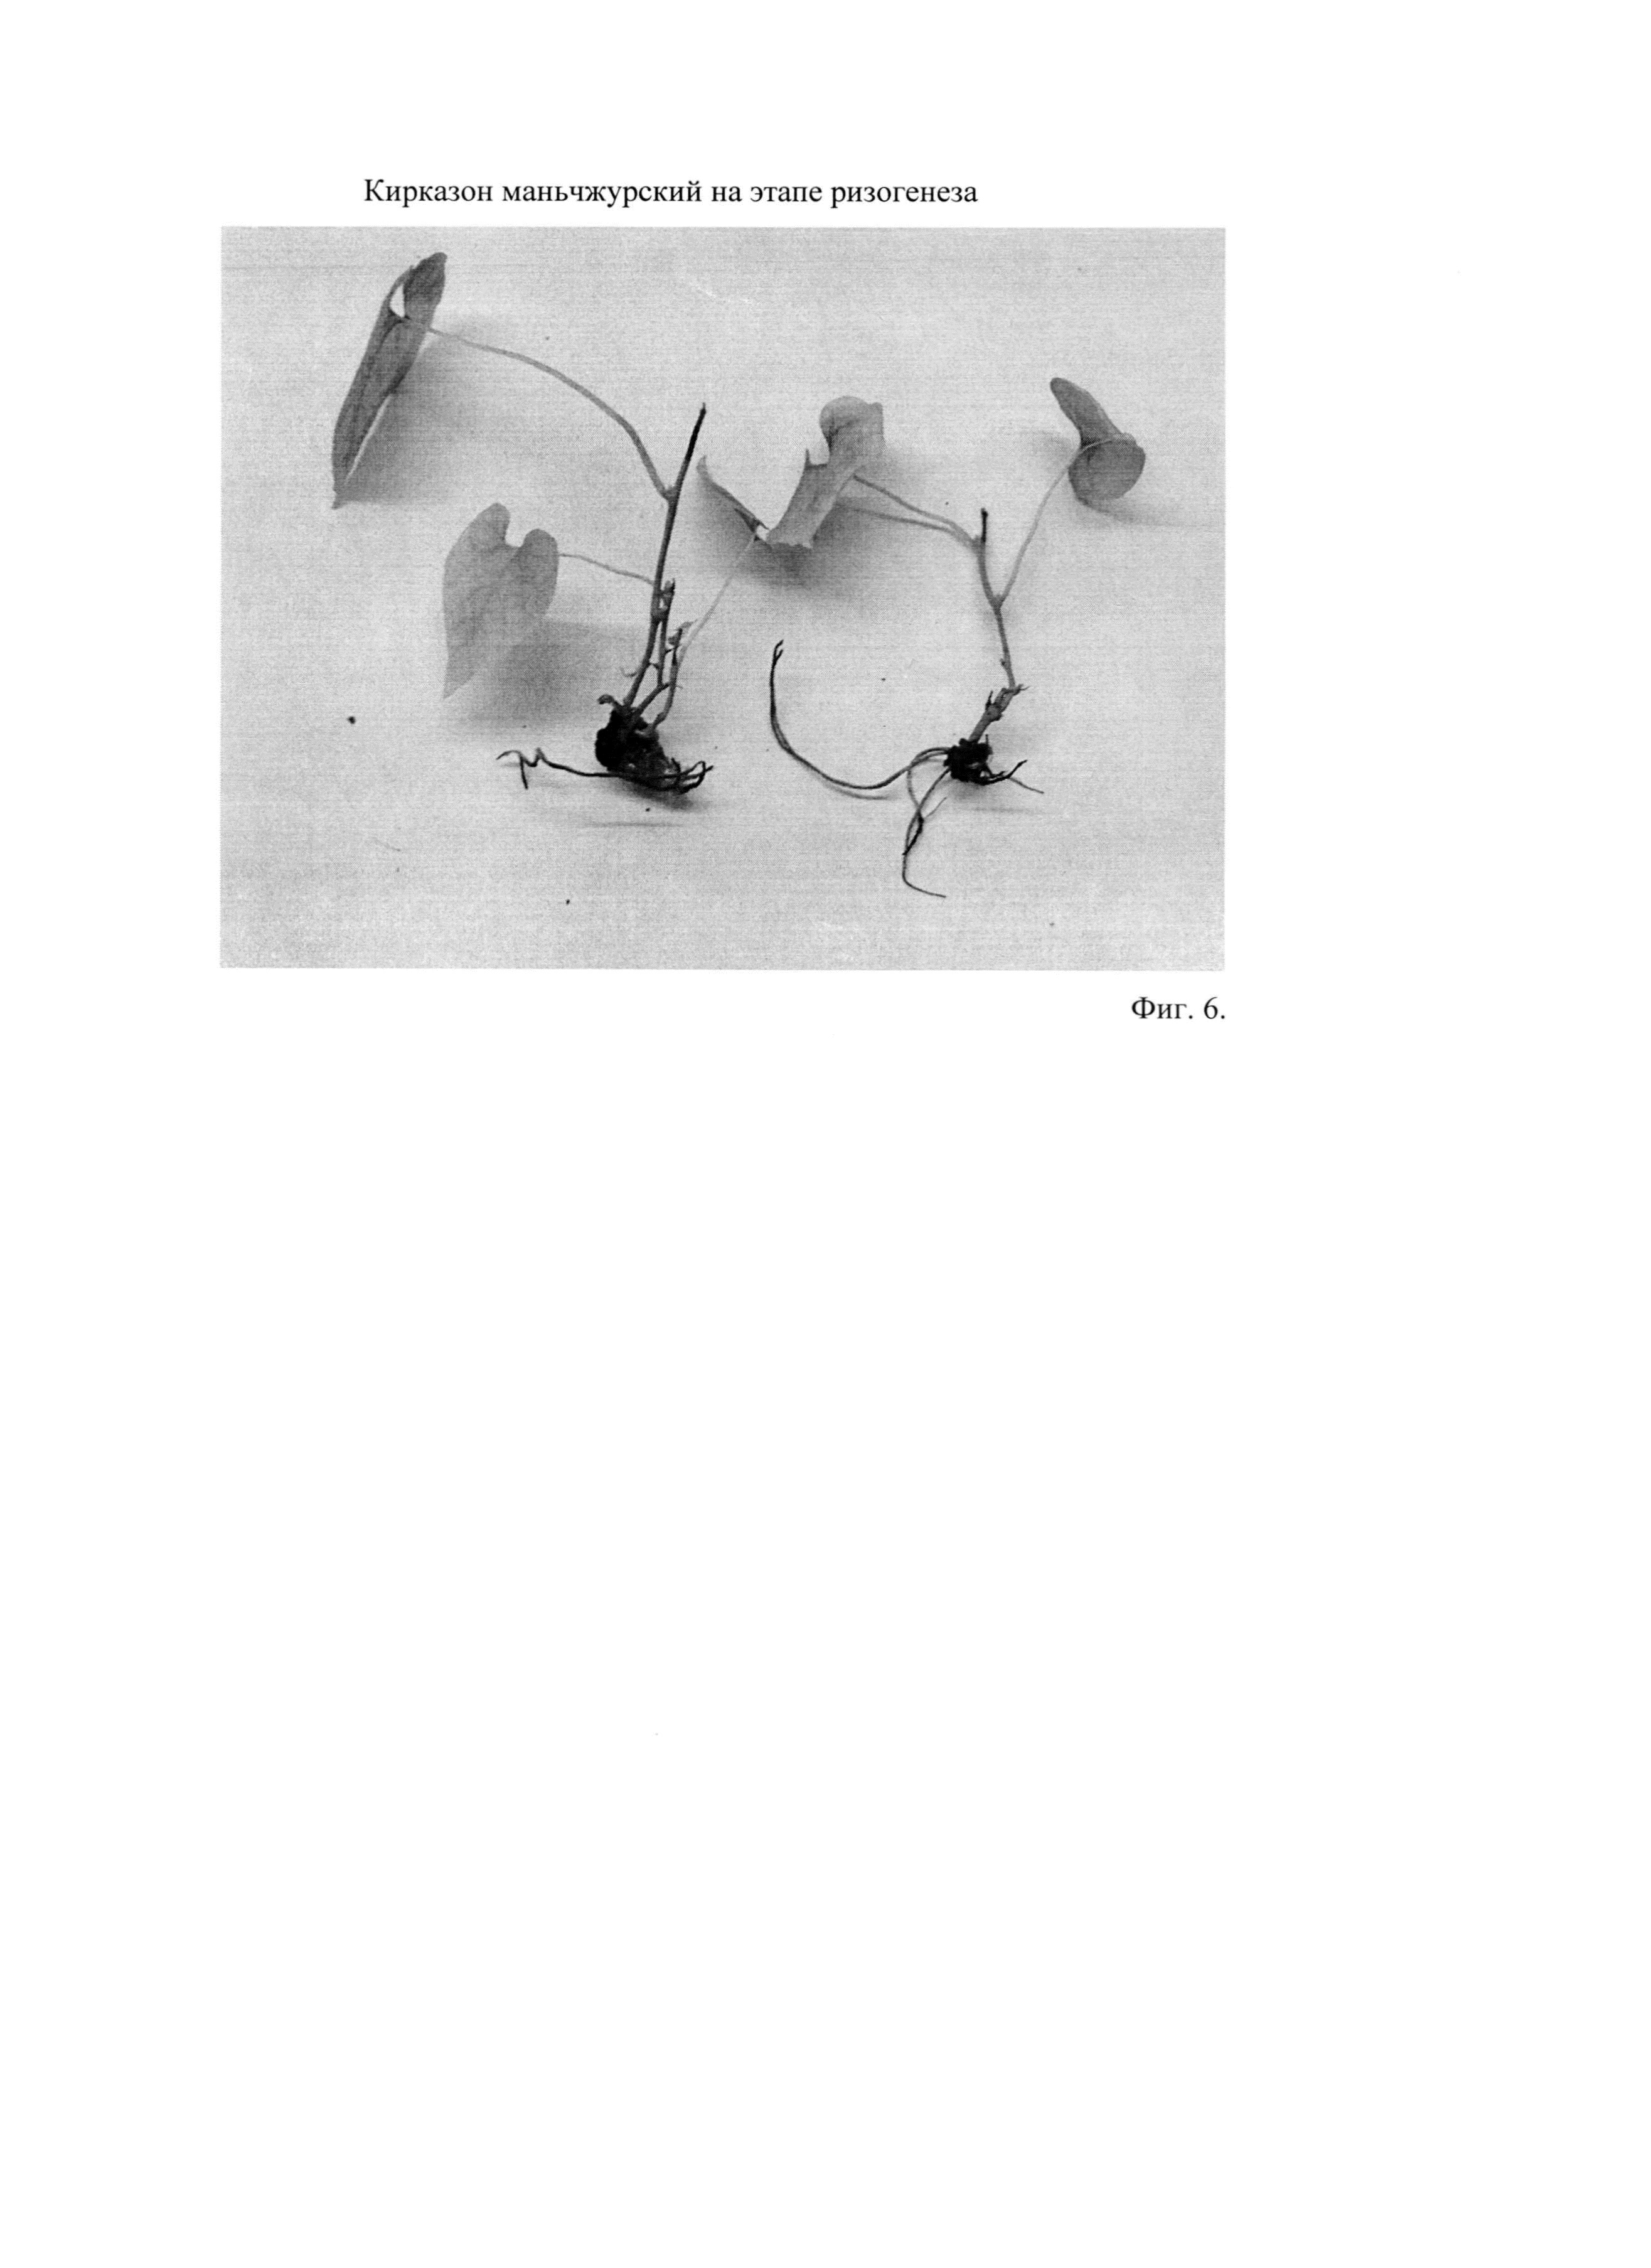 Способ клонального микроразмножения кирказона маньчжурского (Aristolochia manshuriensis Kom.)